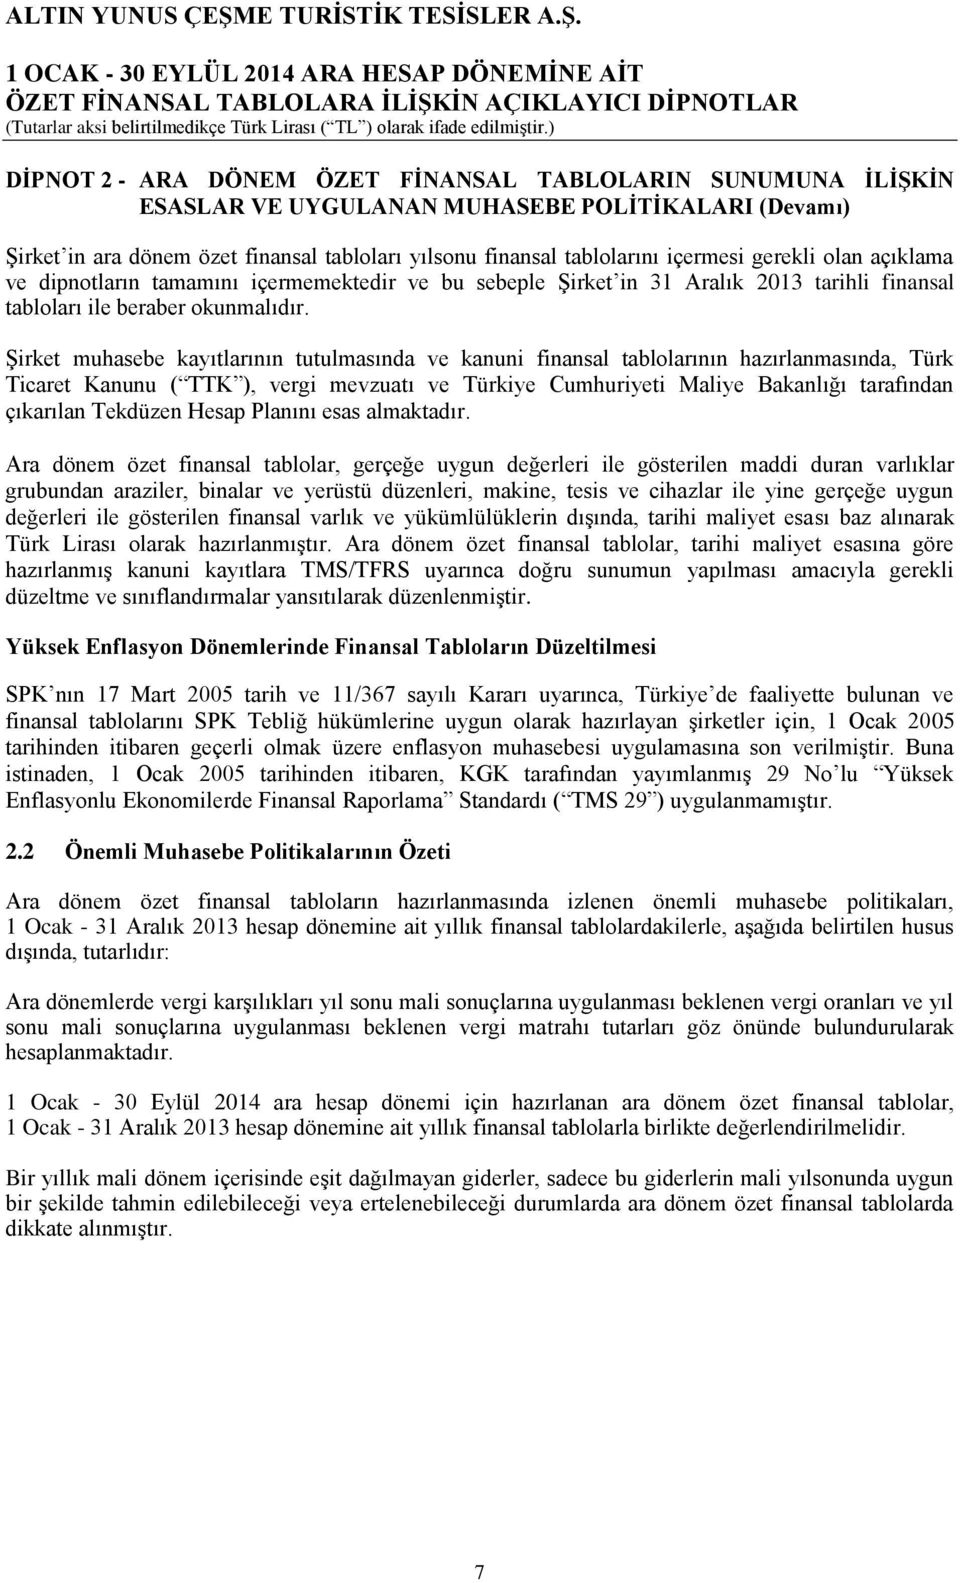 Şirket muhasebe kayıtlarının tutulmasında ve kanuni finansal tablolarının hazırlanmasında, Türk Ticaret Kanunu ( TTK ), vergi mevzuatı ve Türkiye Cumhuriyeti Maliye Bakanlığı tarafından çıkarılan